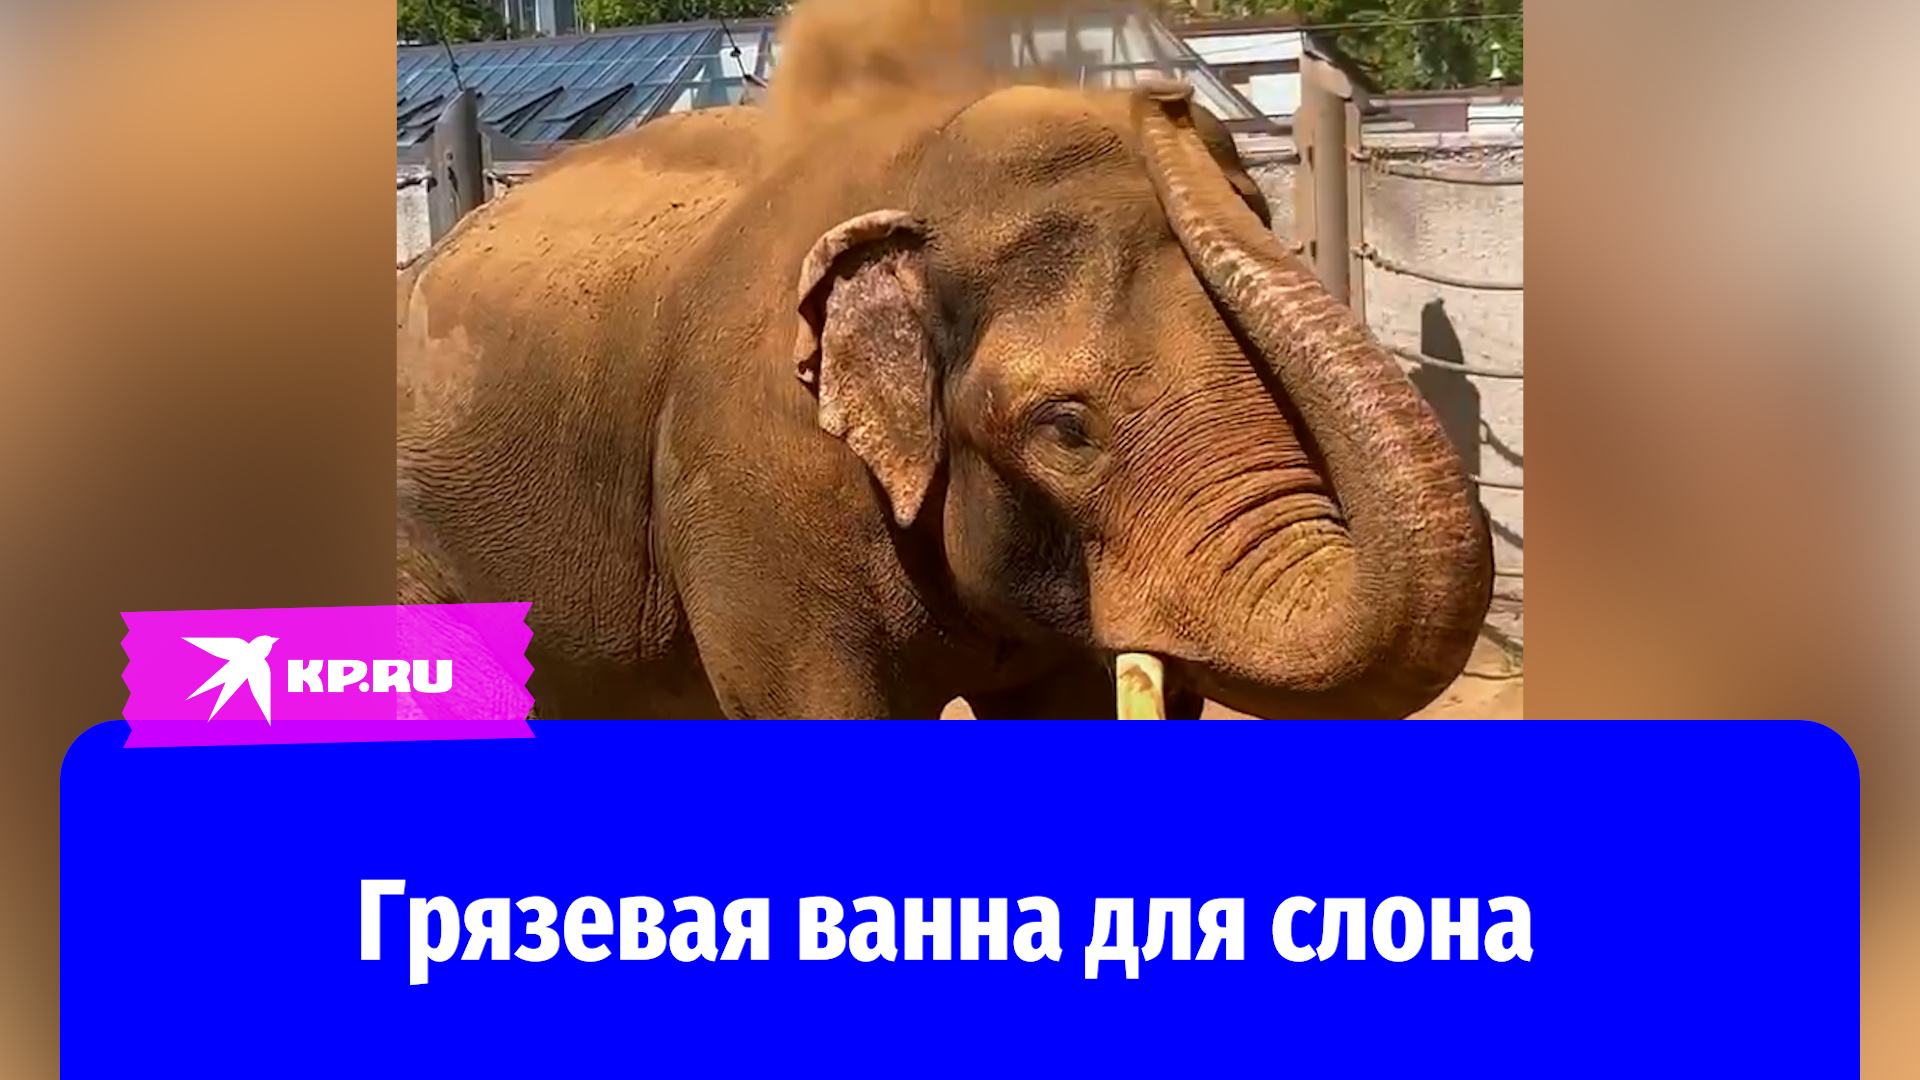 Слон из московского зоопарка принимает грязевые ванны